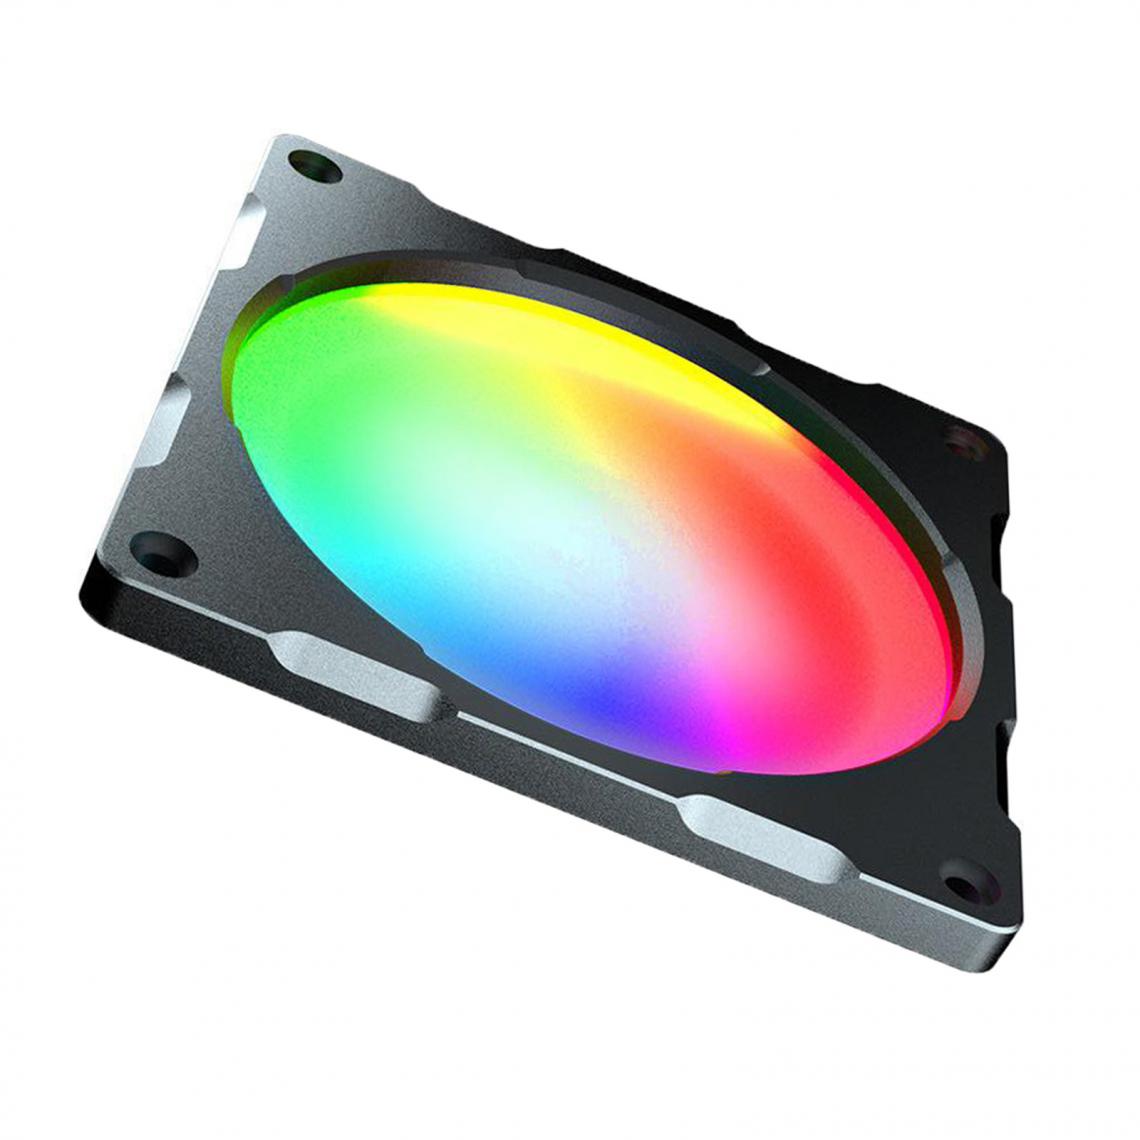 marque generique - Super Silencieux LED RGB PC Boîtier de Refroidissement Ventilateur Radiateur Haute Vitesse Haute Luminosité 14cm - Grille ventilateur PC